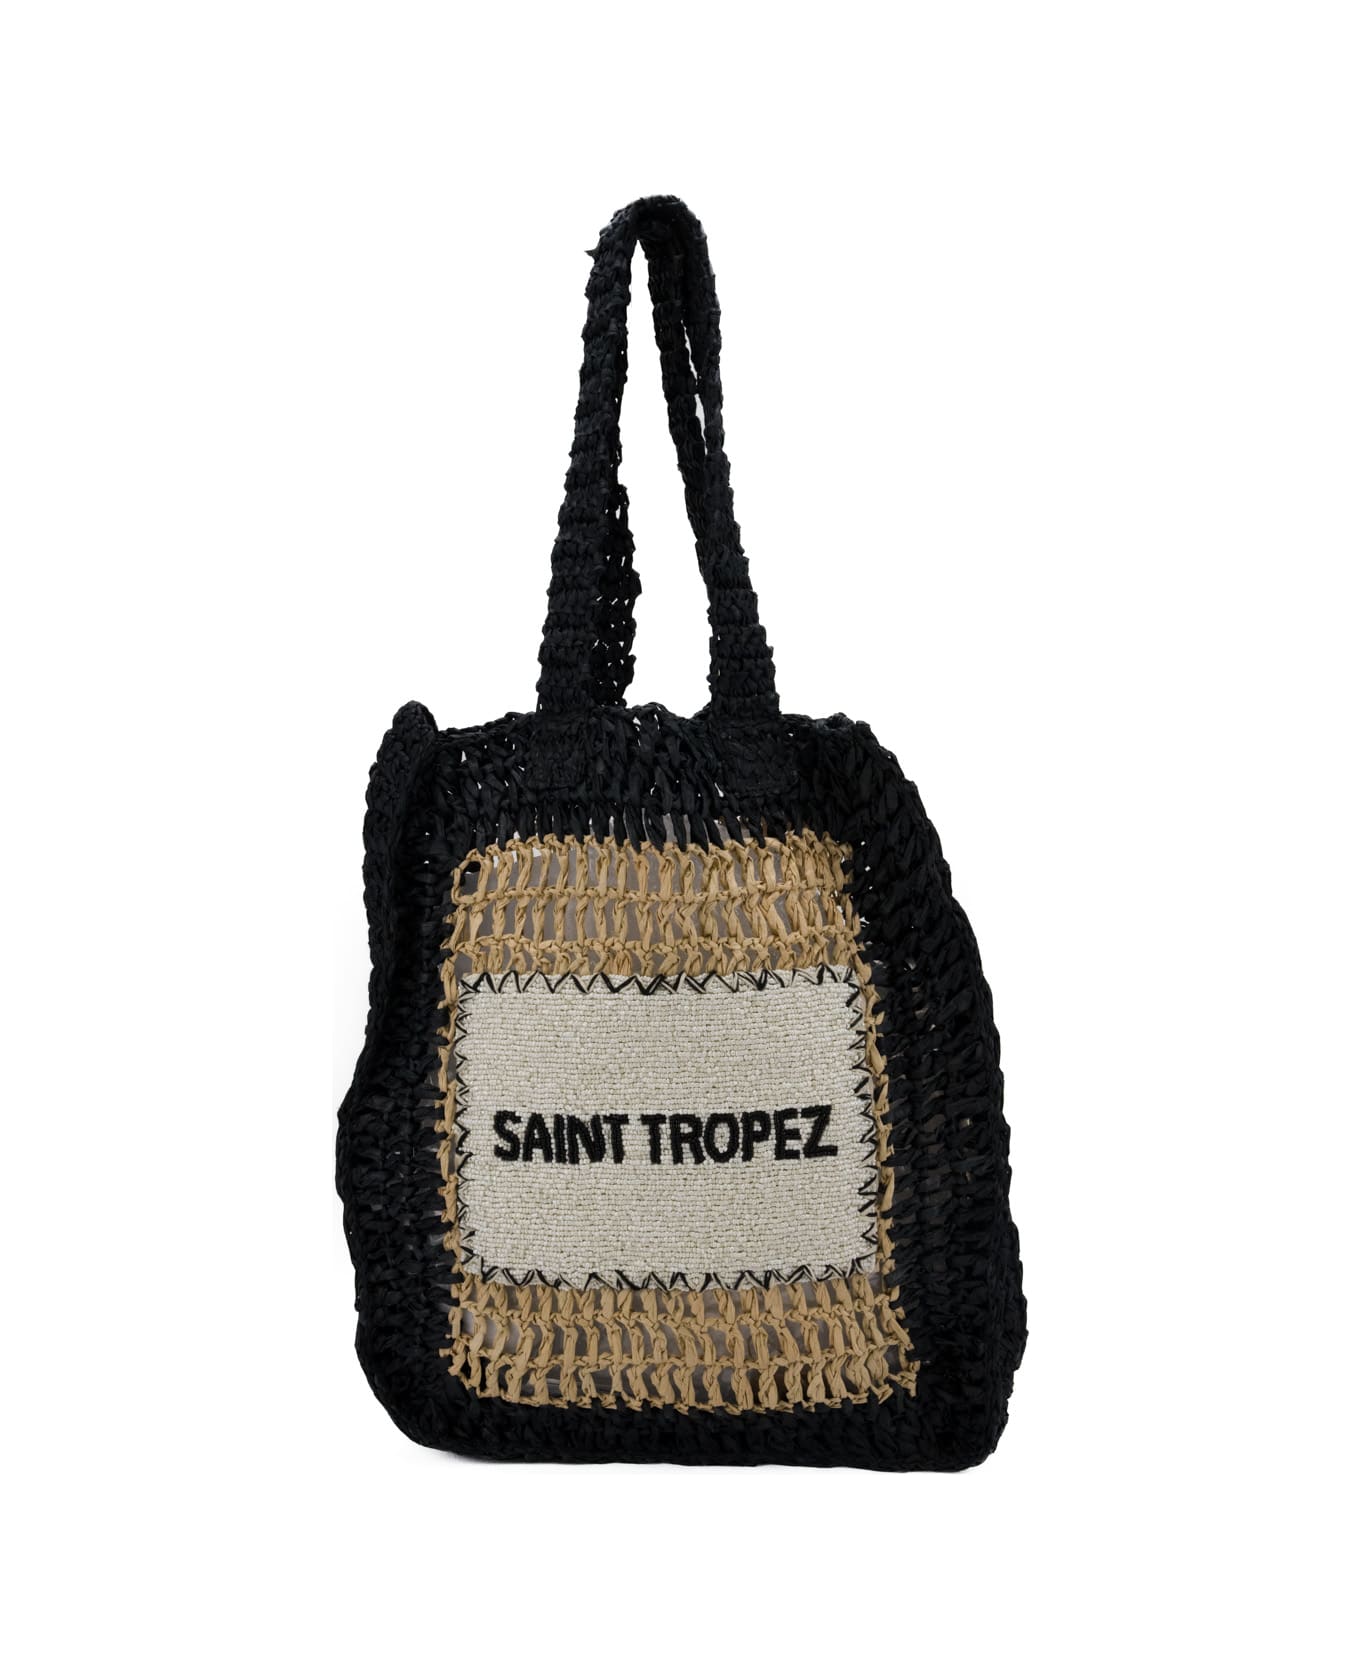 De Siena Saint Tropez Black Bag - Natural black